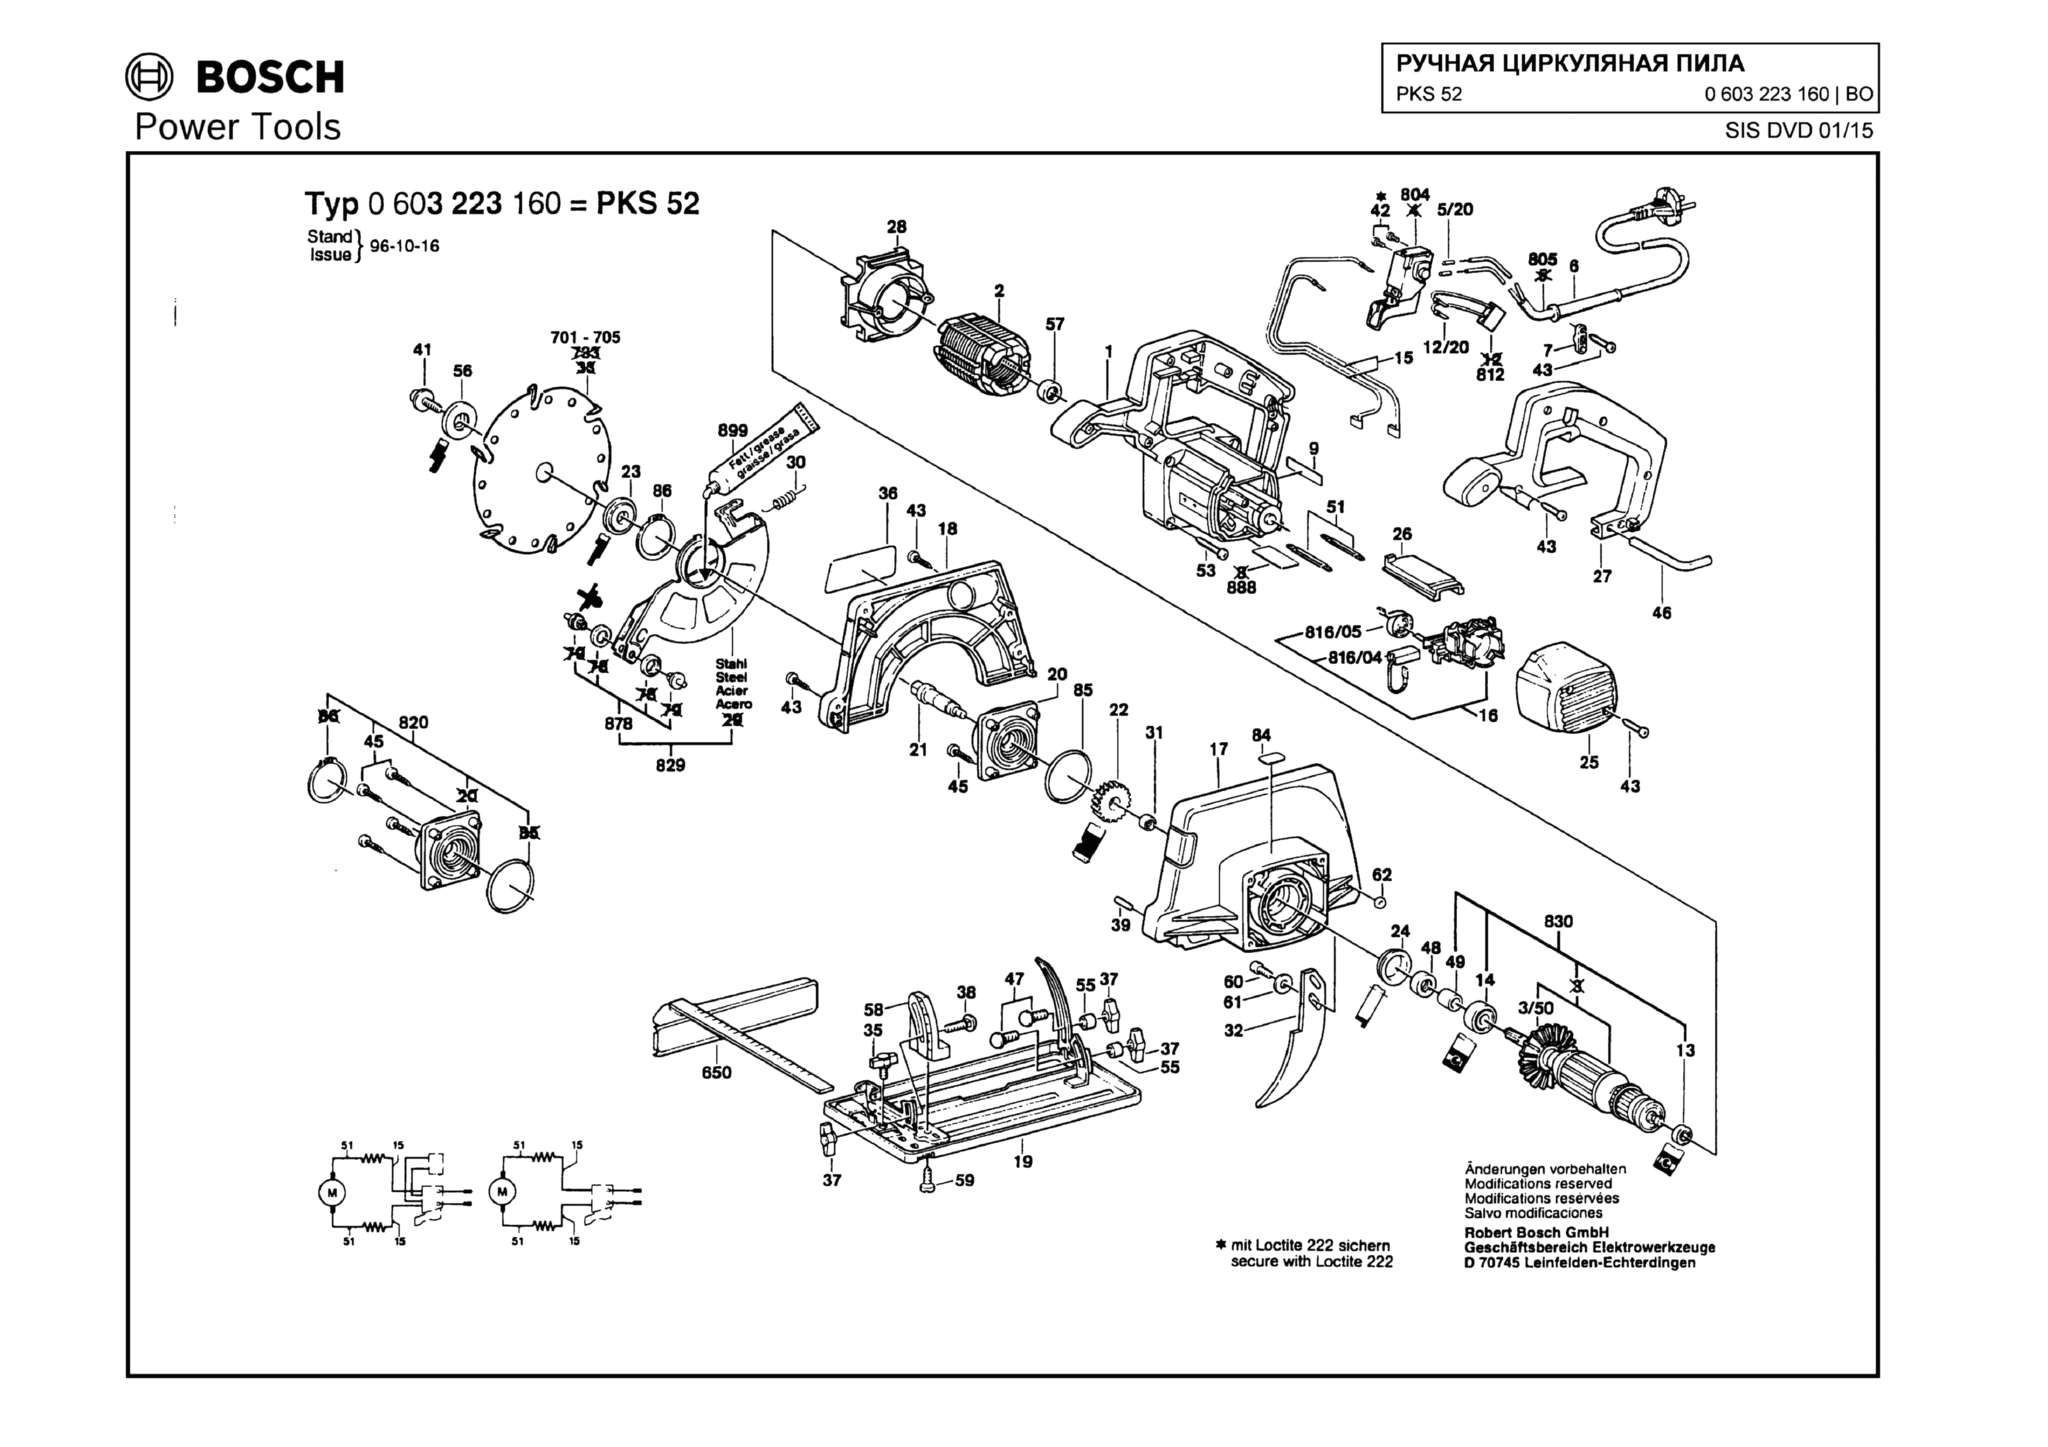 Запчасти, схема и деталировка Bosch PKS 52 (ТИП 0603223160)